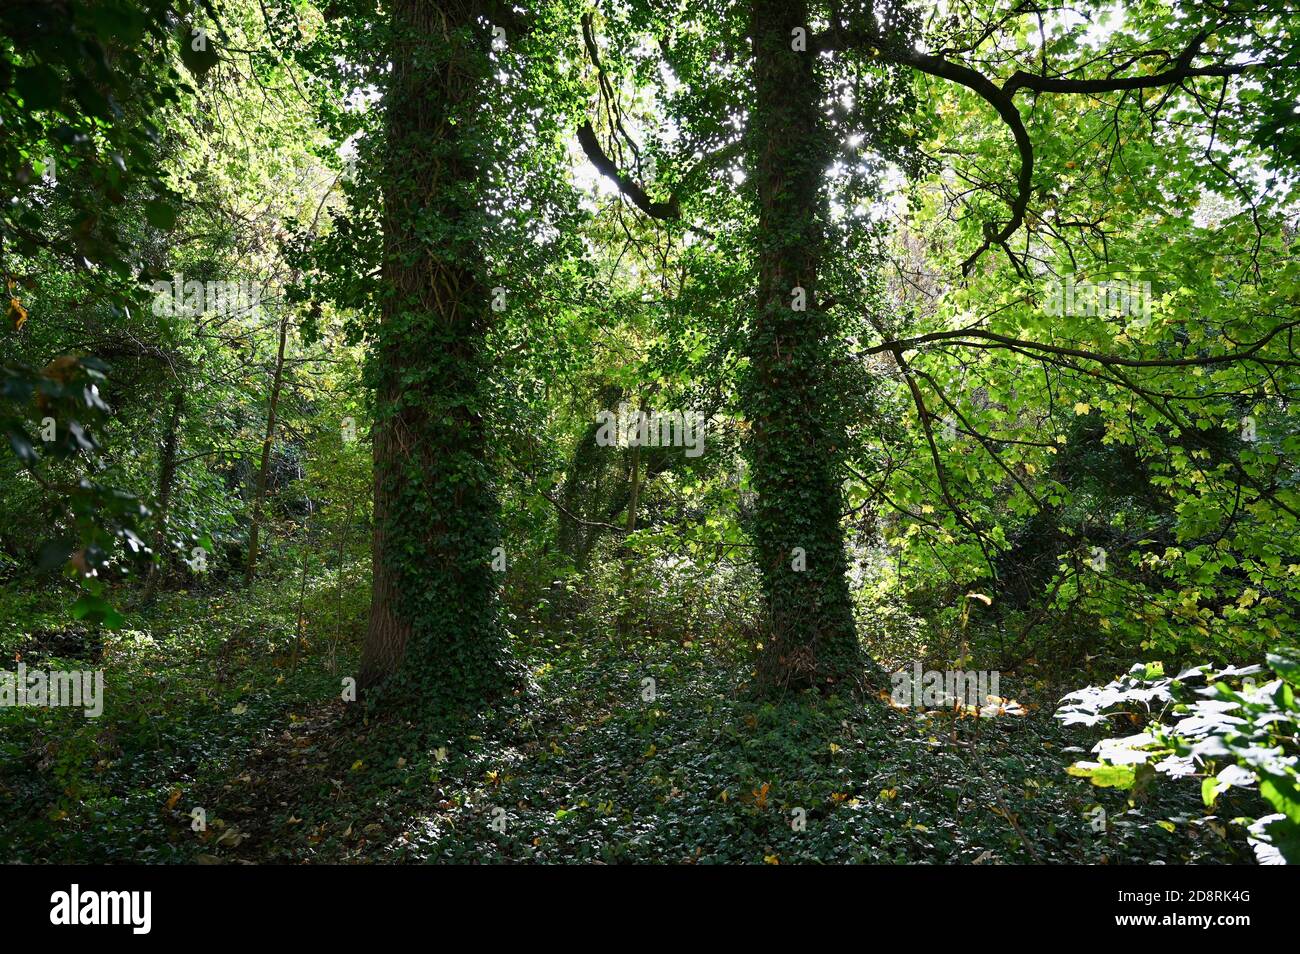 Feuilles d'automne. Foots Cray Meadows, Sidcup, Kent. ROYAUME-UNI Banque D'Images